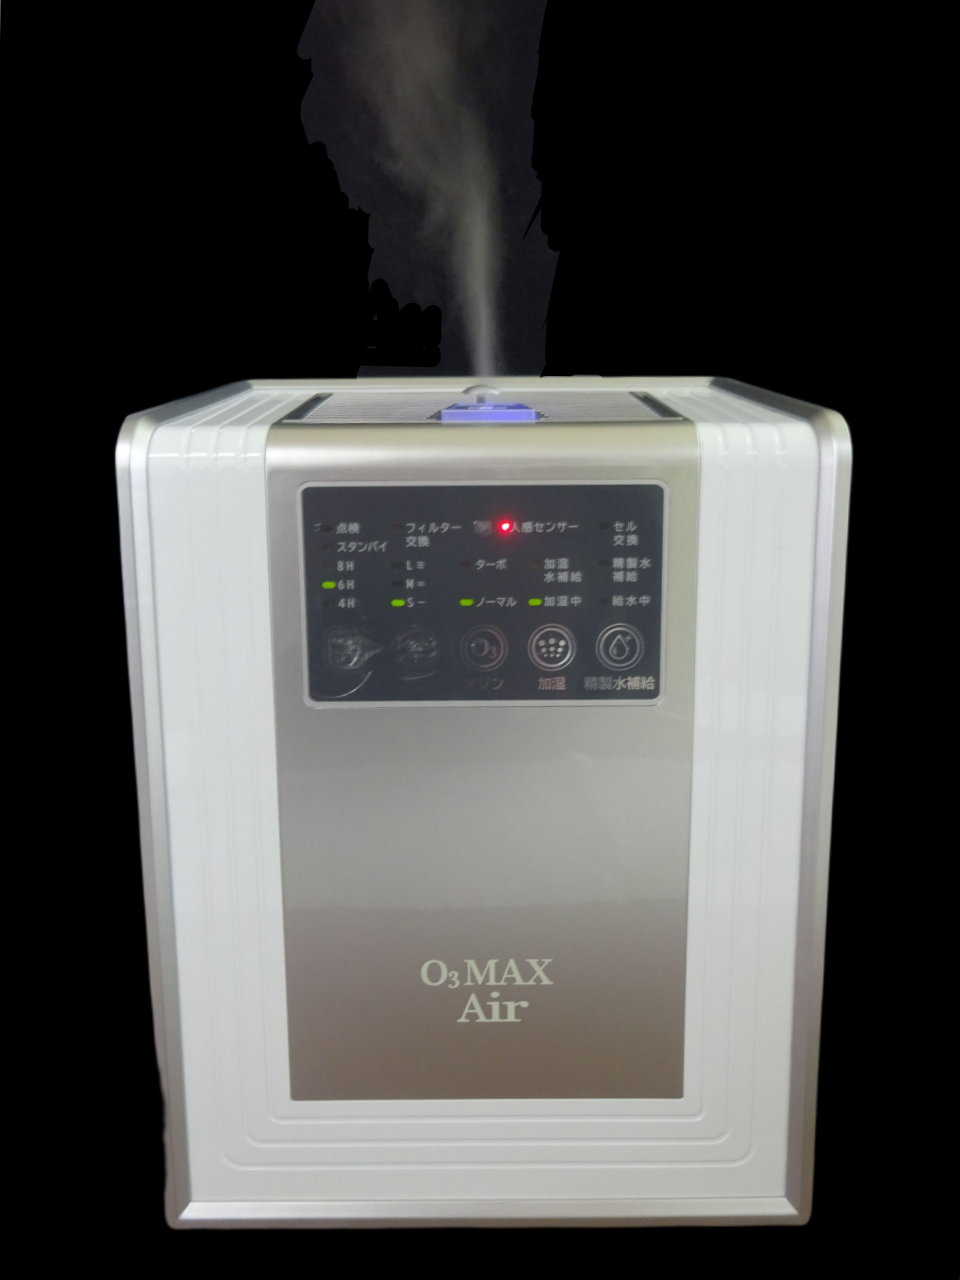 オゾン除菌加湿器 O3MAX Air – サイレント・プロバイダー